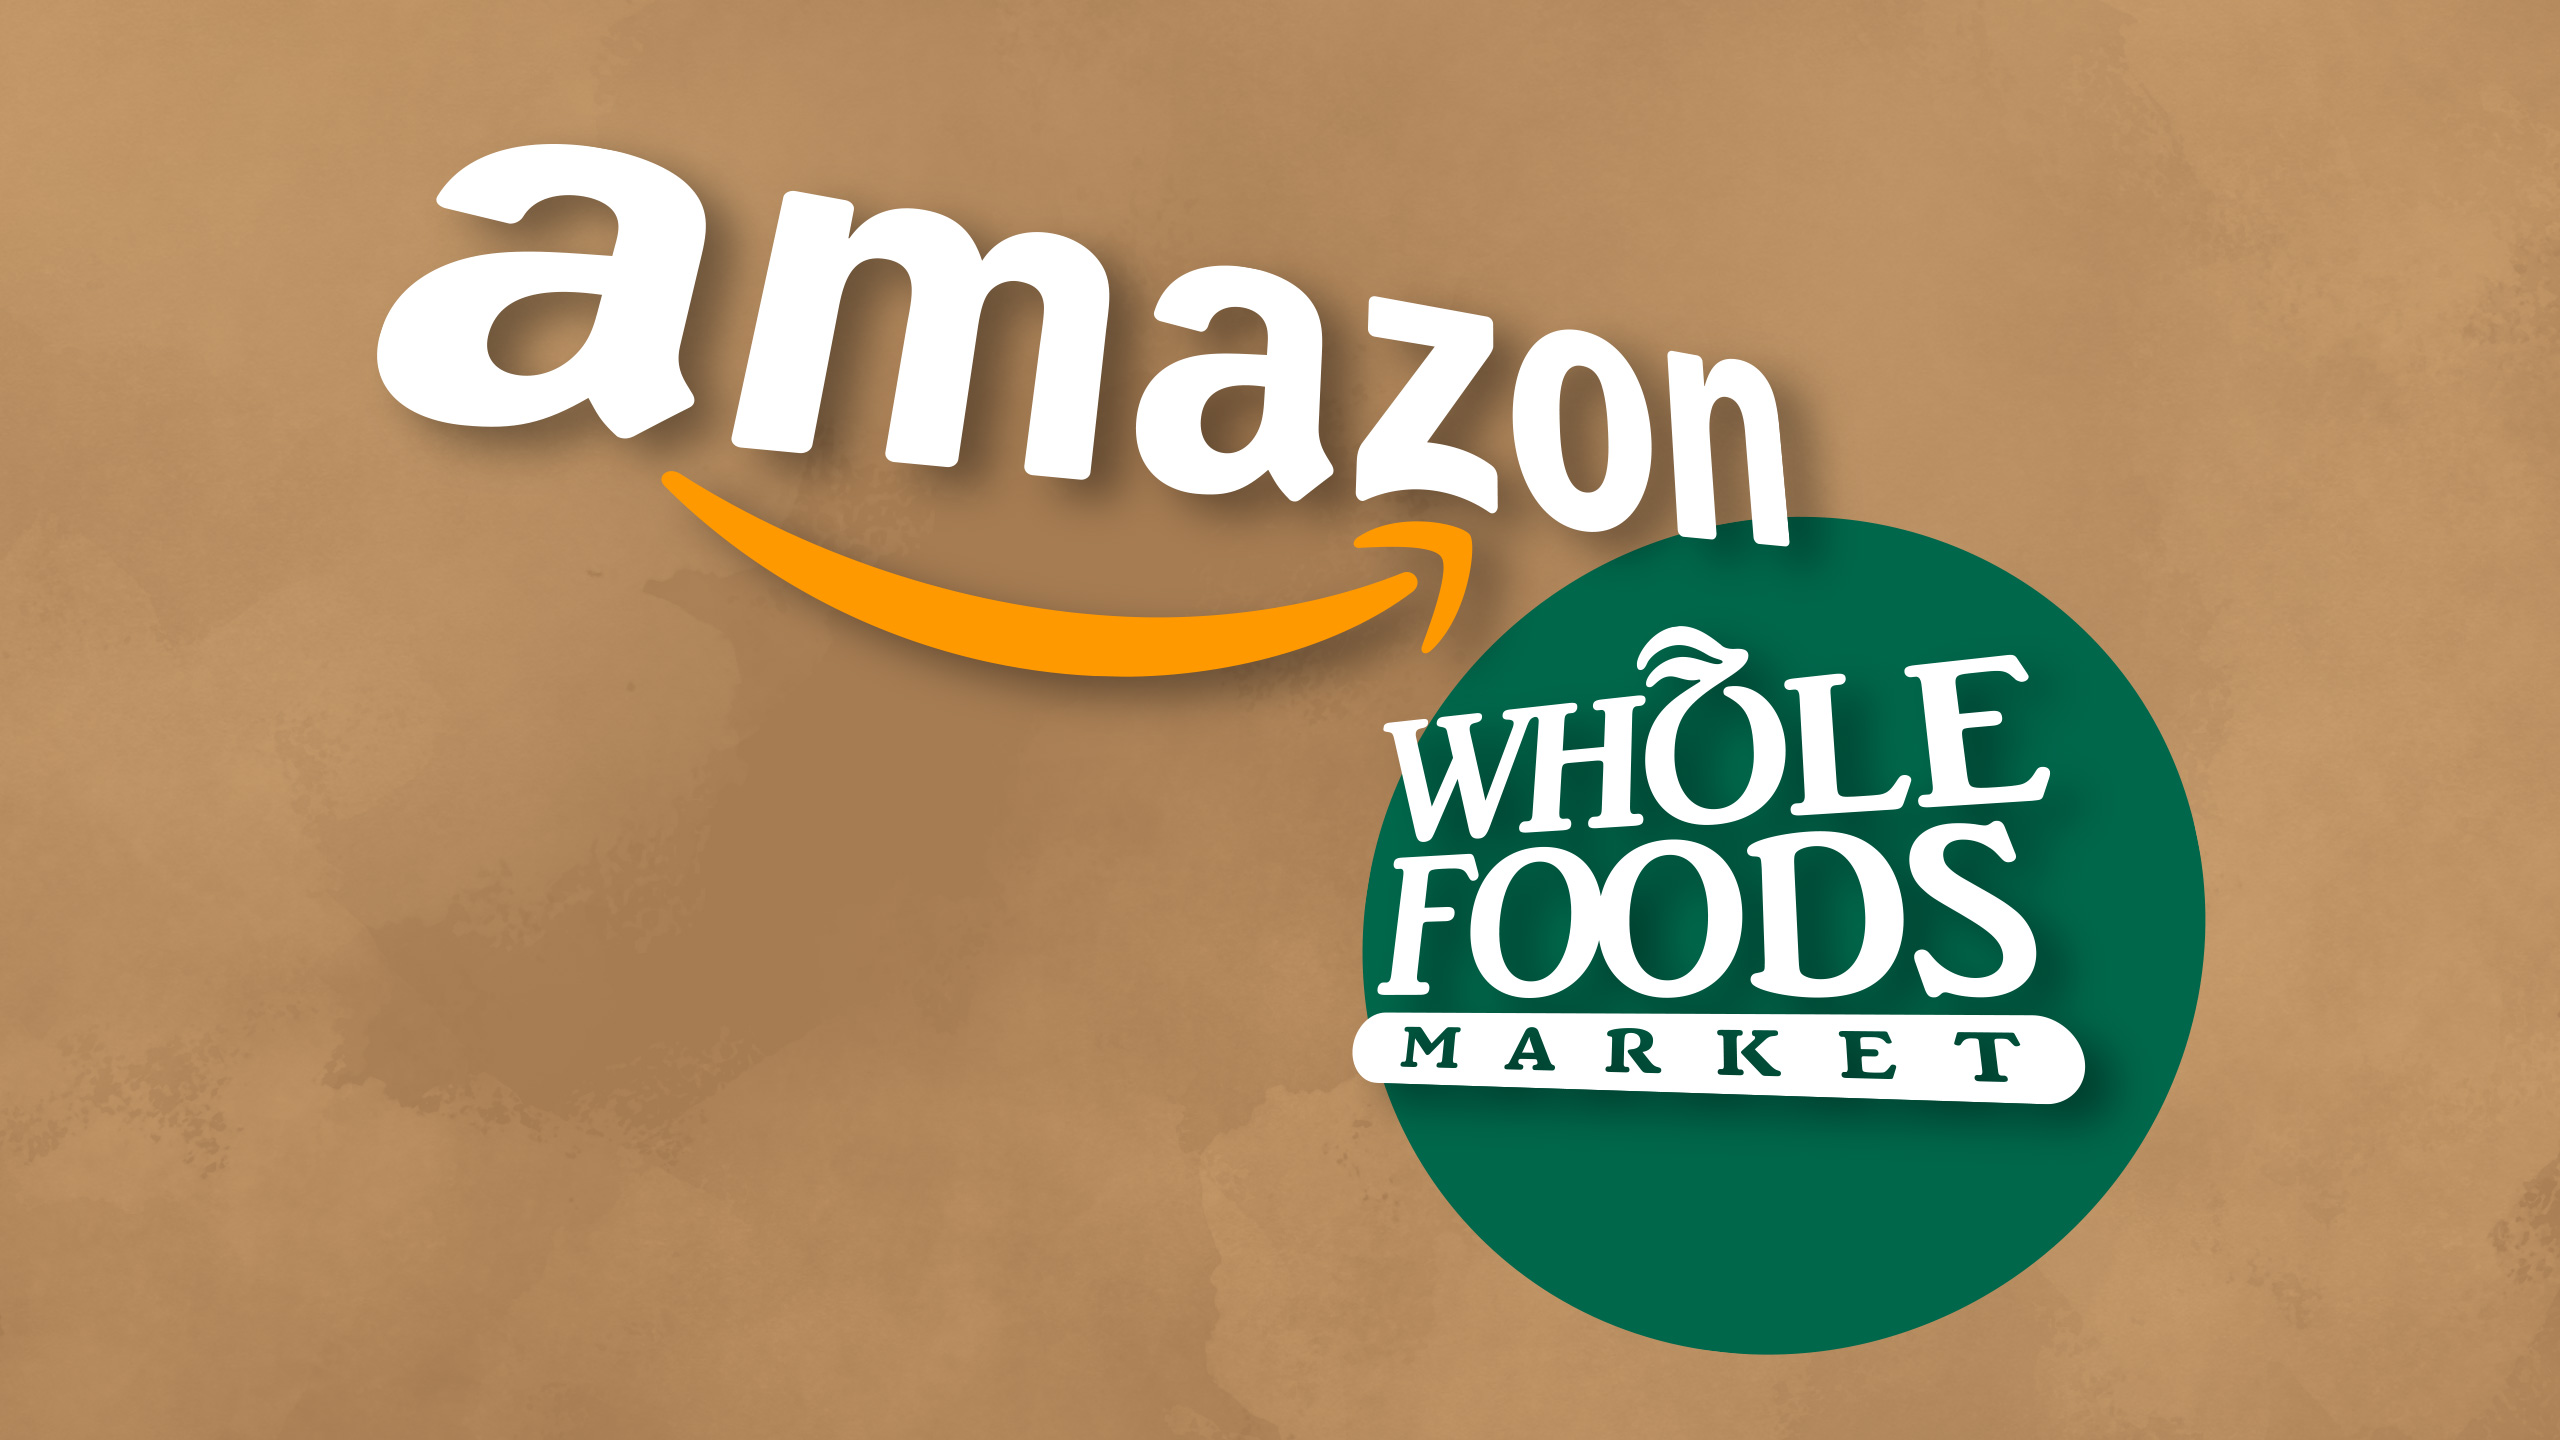 Amazon, Whole Foods, retail giant